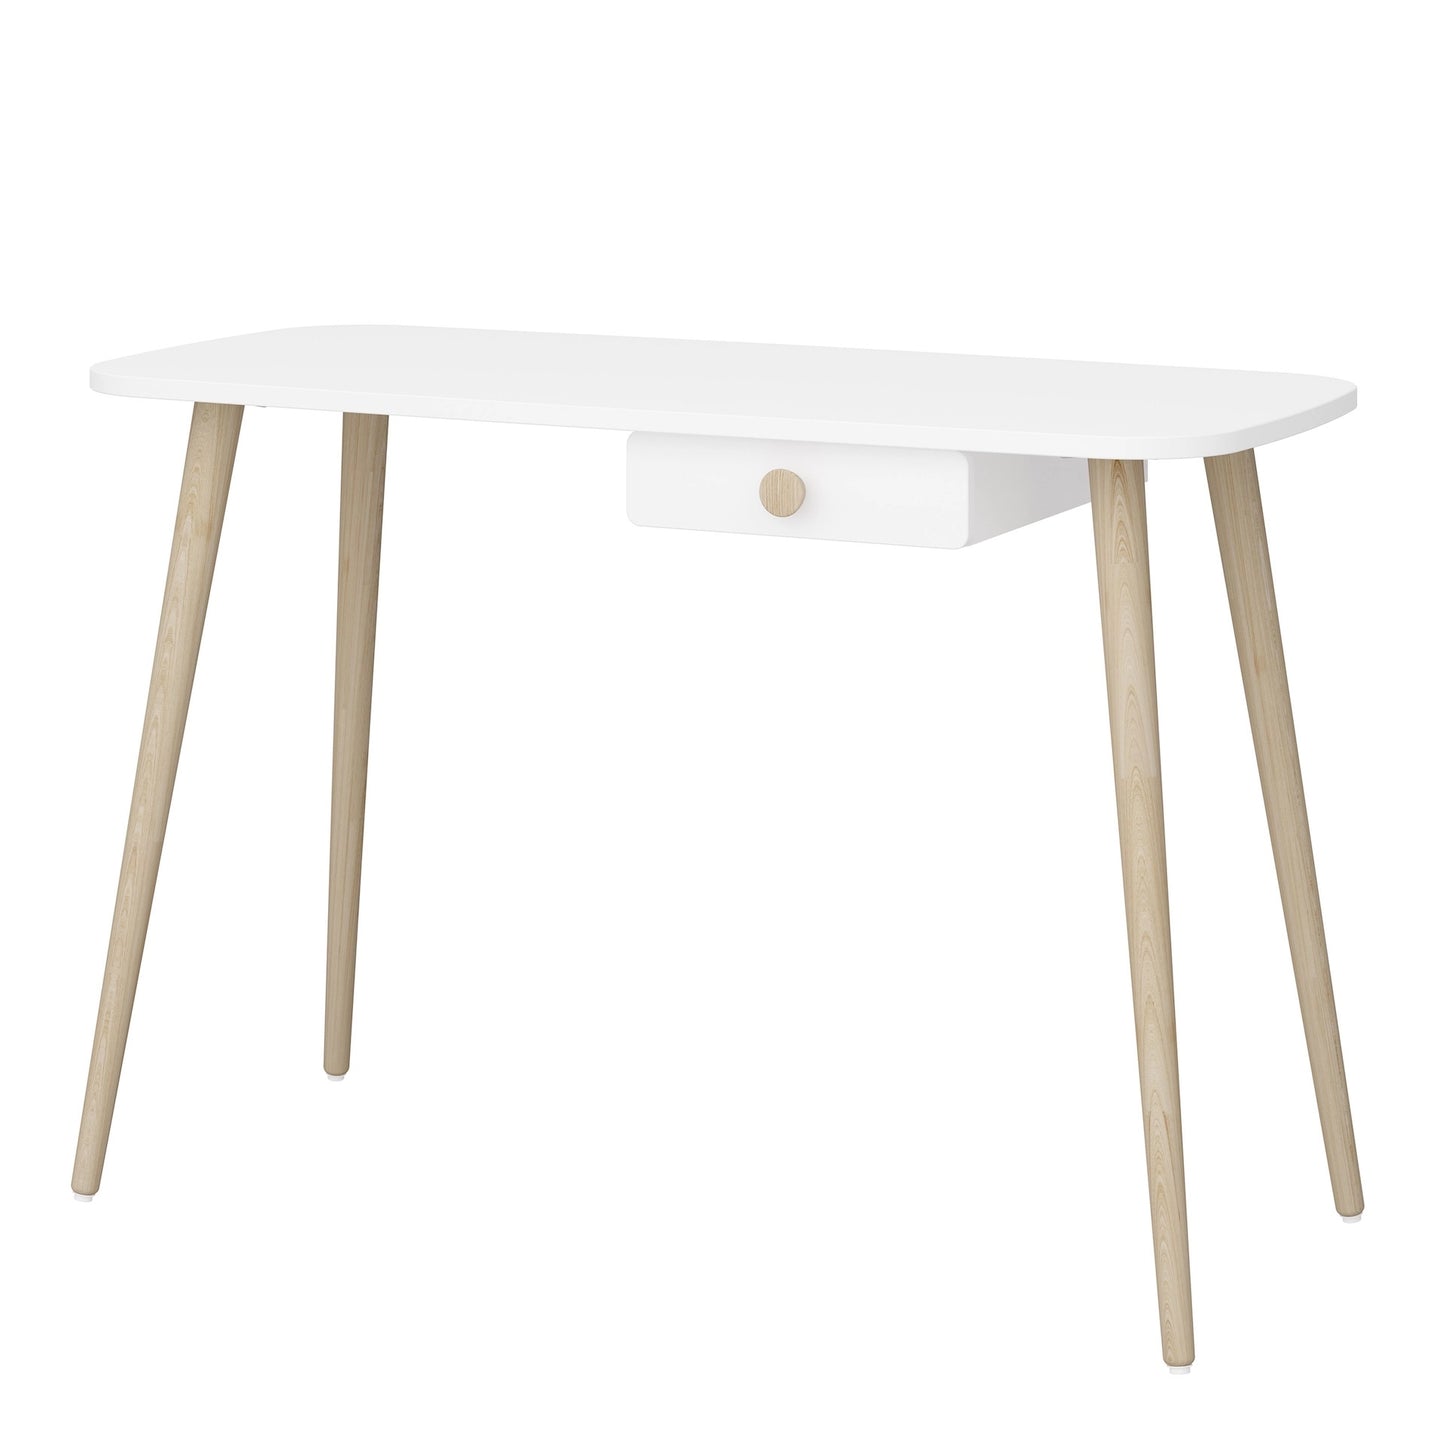 Furniture To Go Gaia Desk 1 Drawer in Pure White